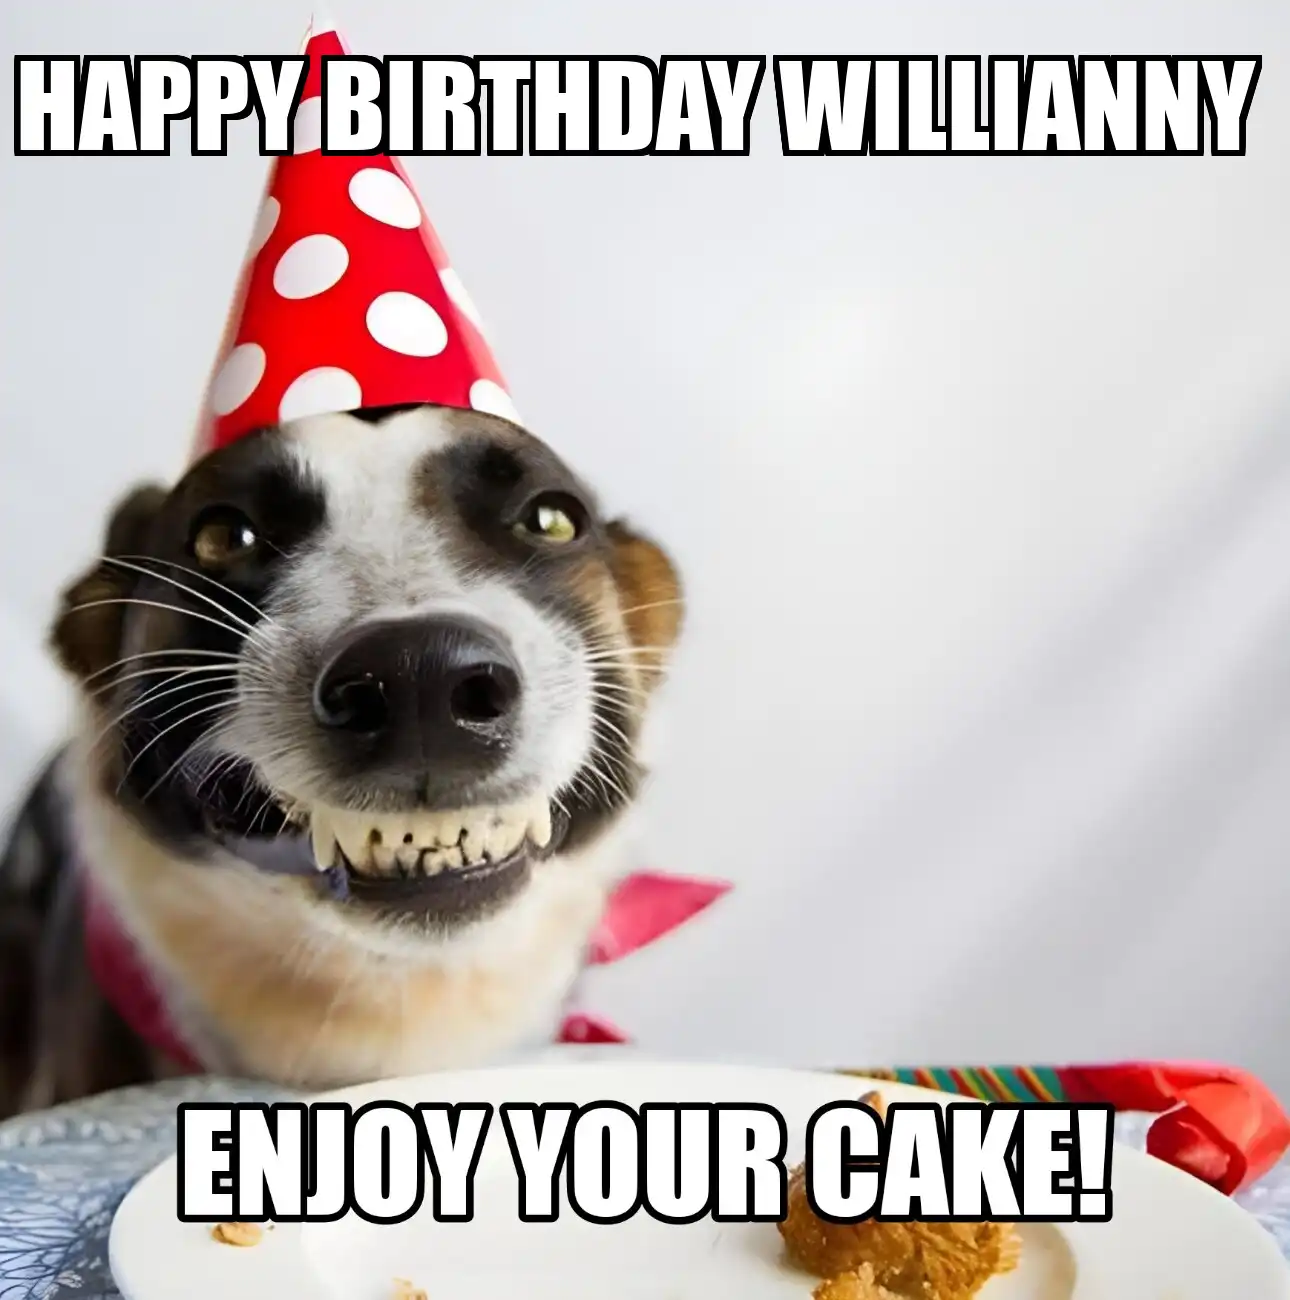 Happy Birthday Willianny Enjoy Your Cake Dog Meme